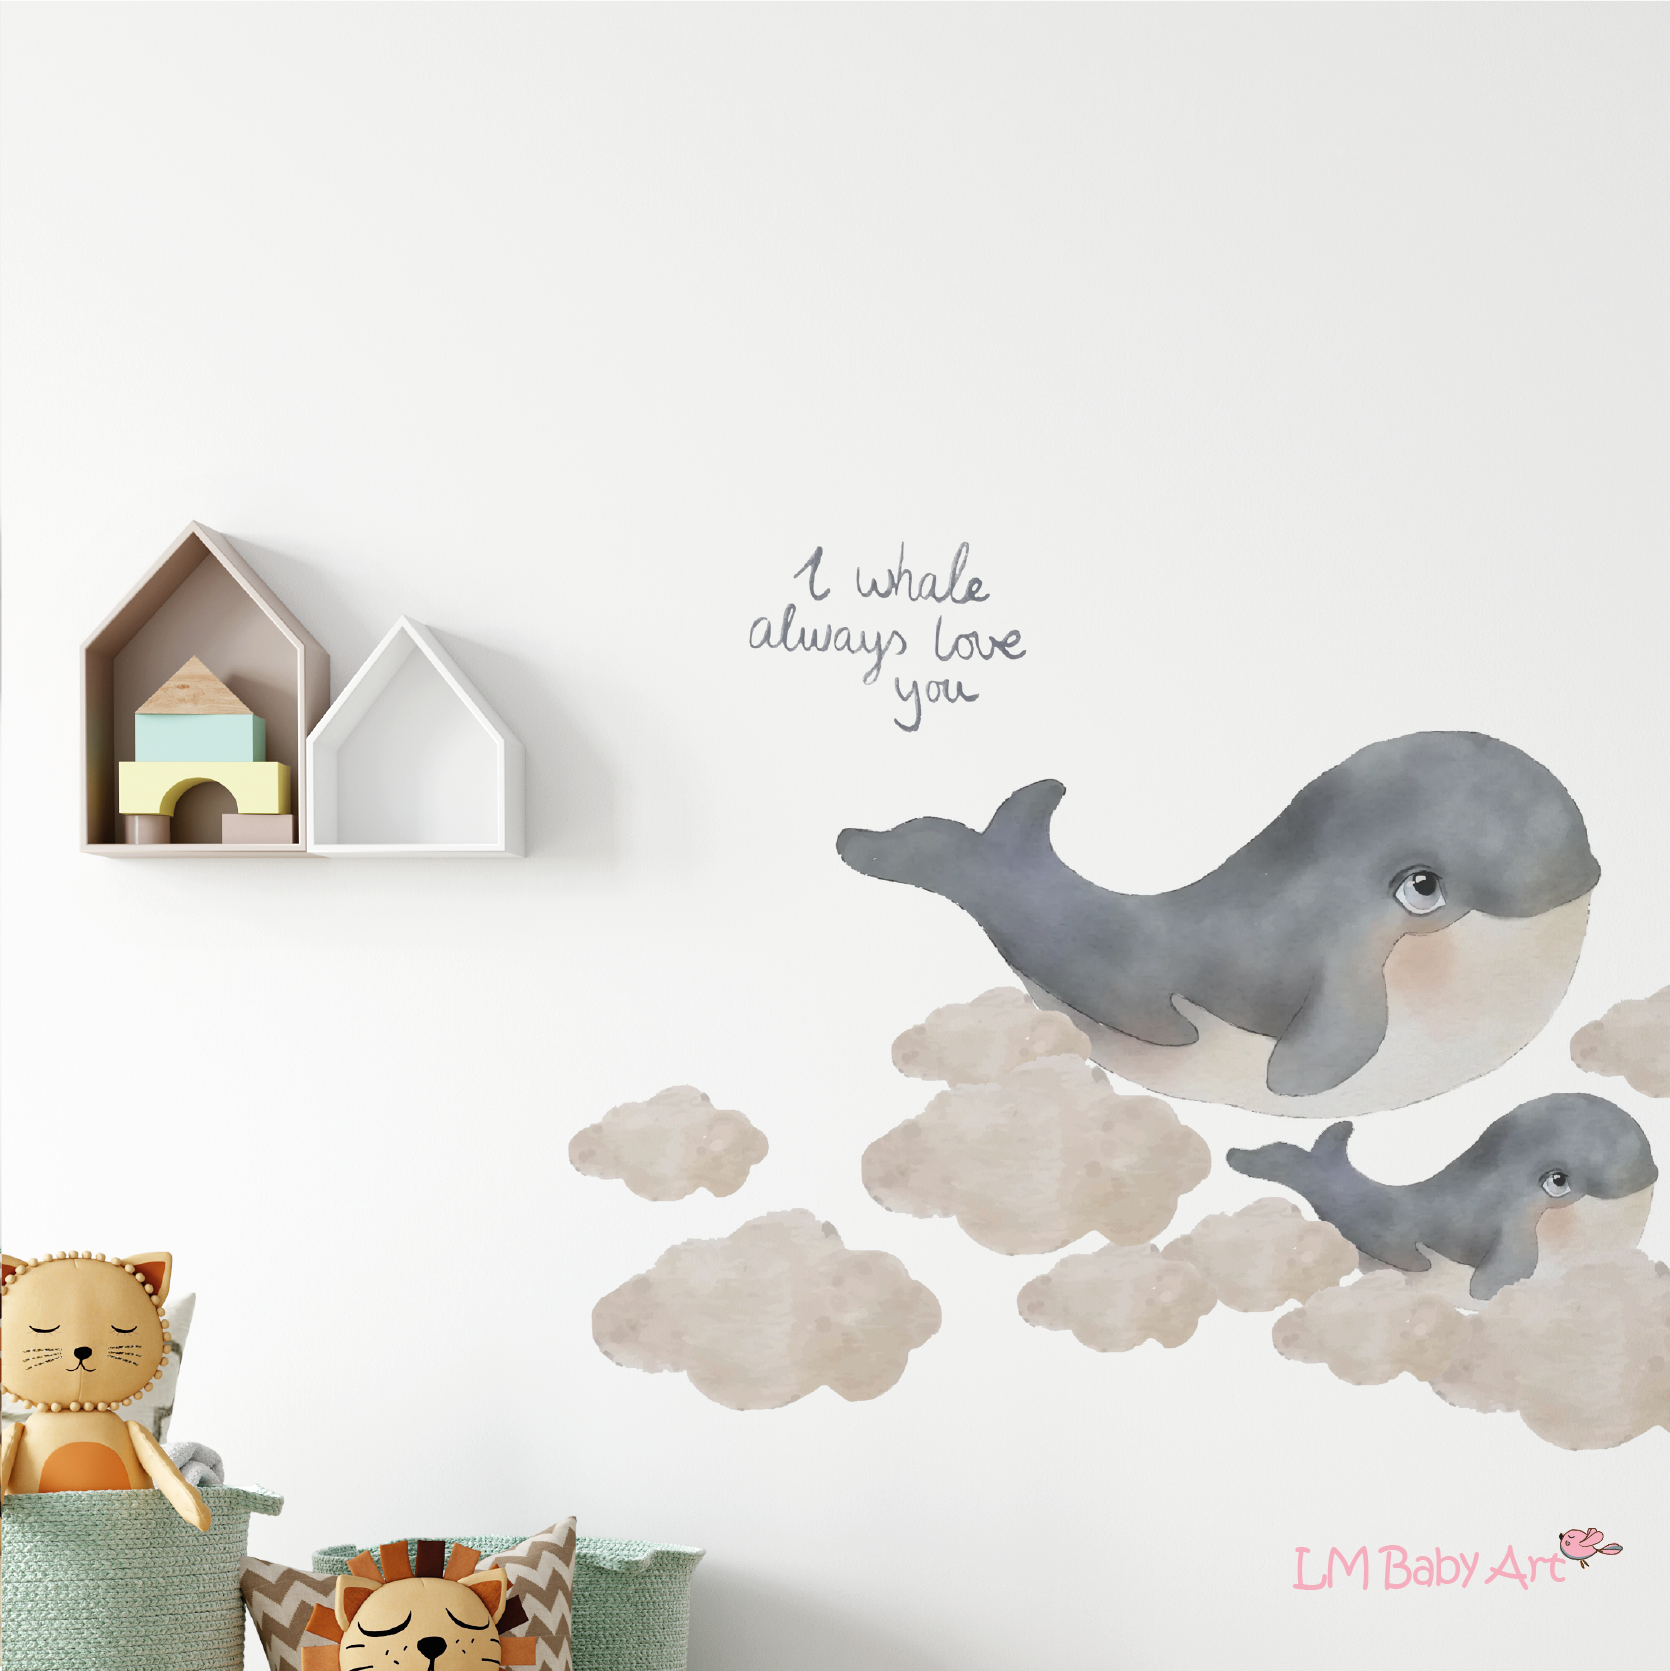 Muursticker tekst: I whale always love you - LM Baby Art | Muurdecoratie voor de allerkleinsten